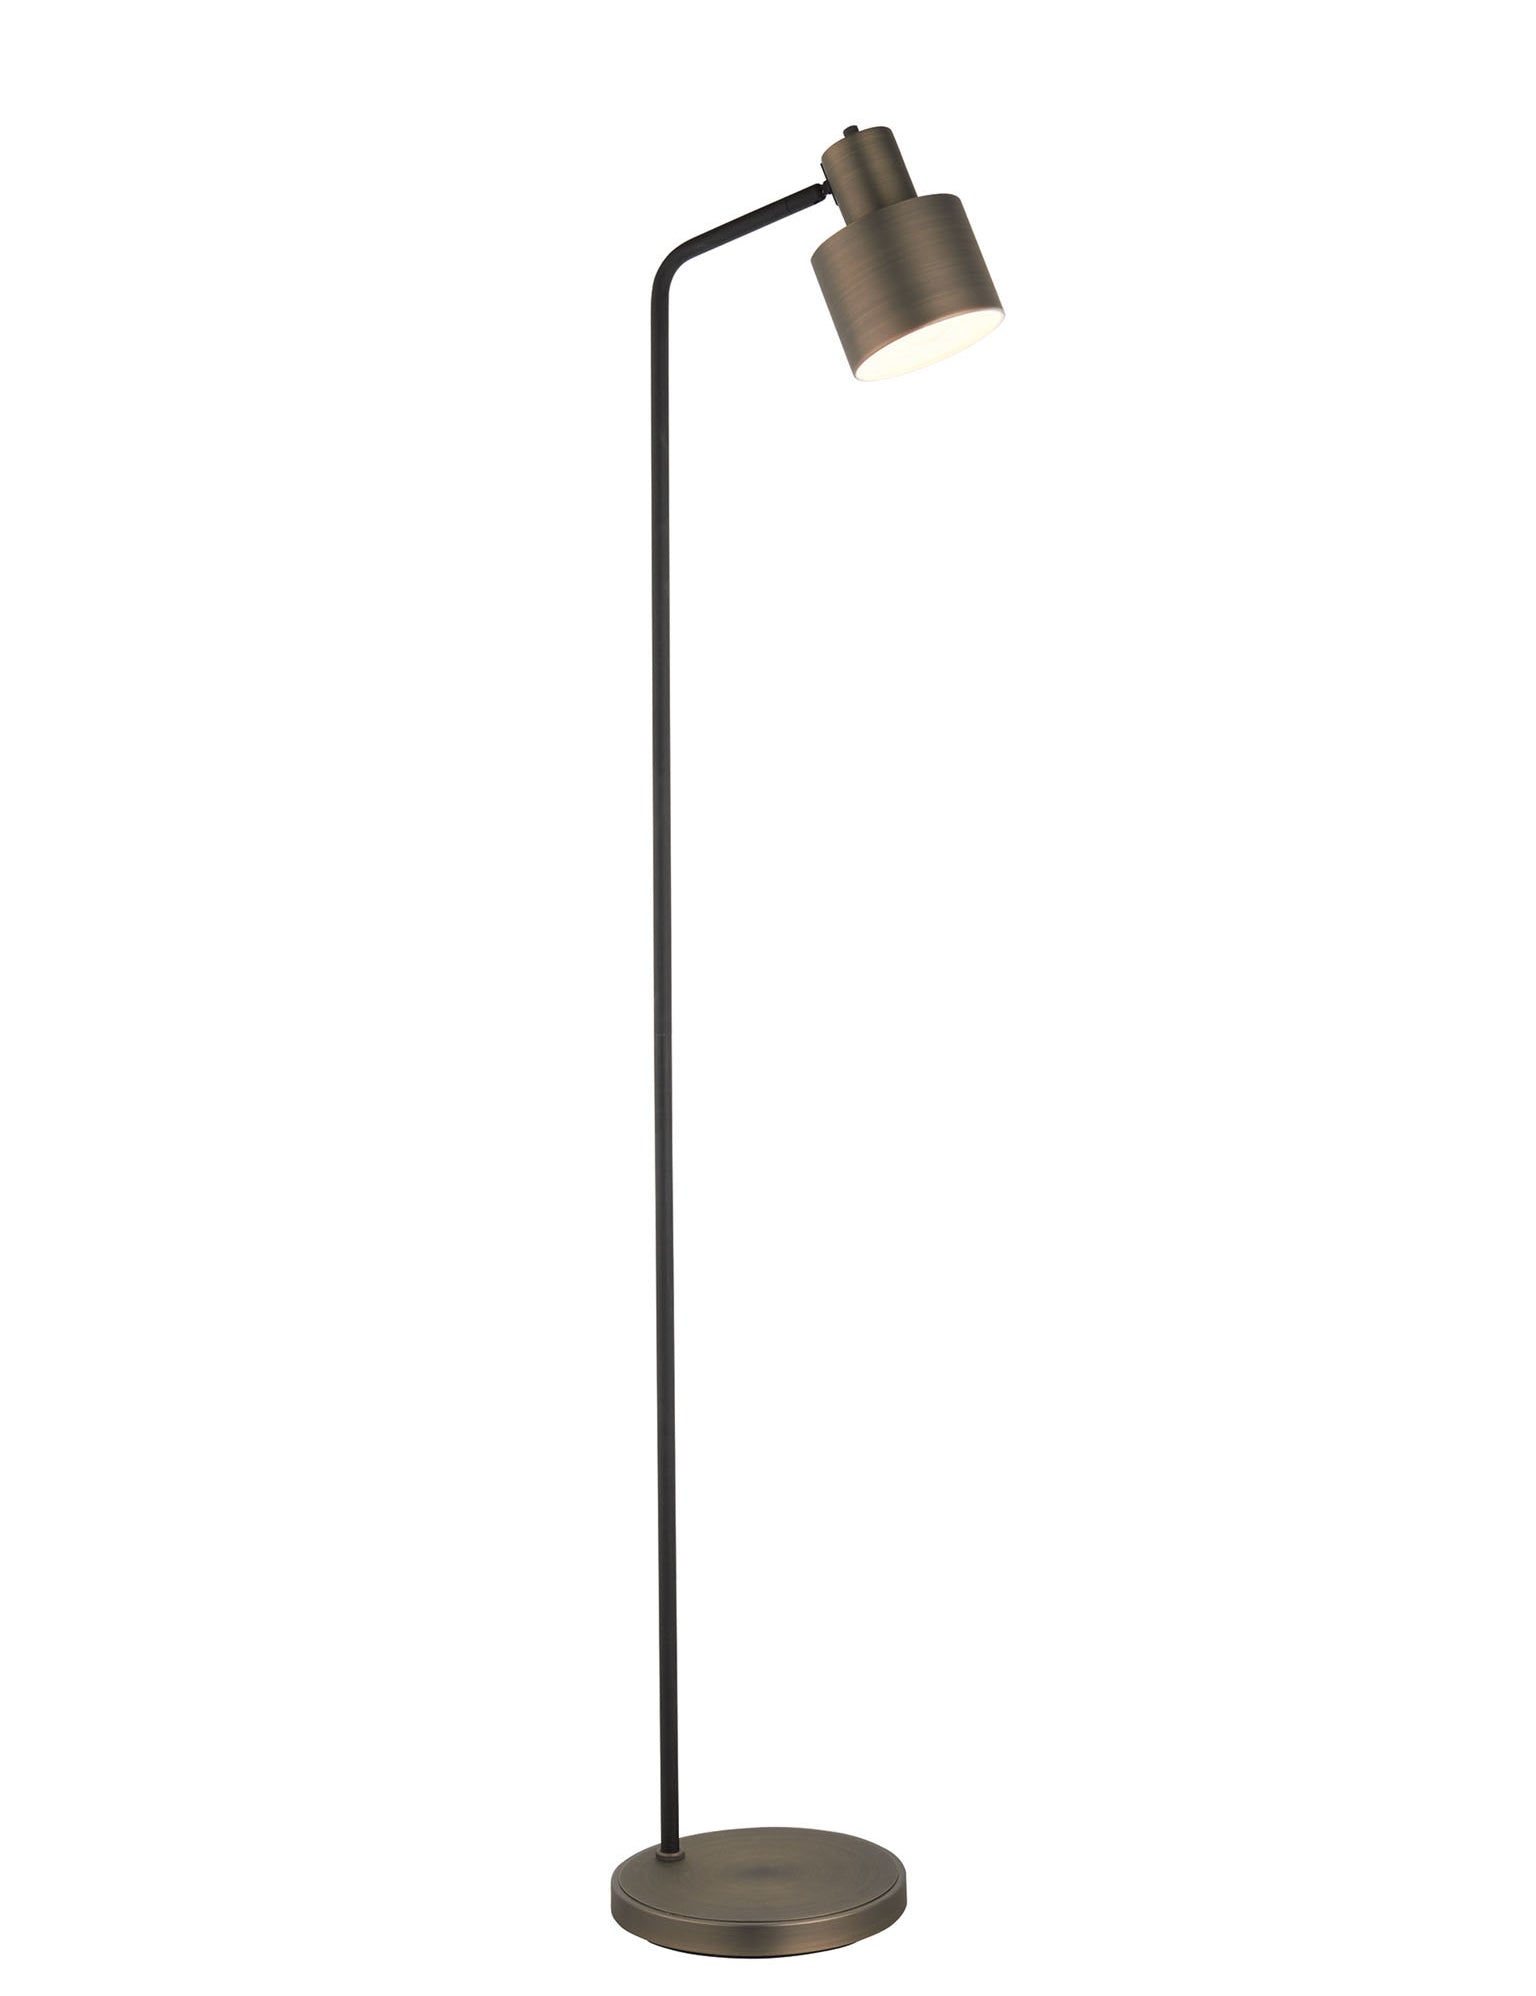 bronze and black floor lamp